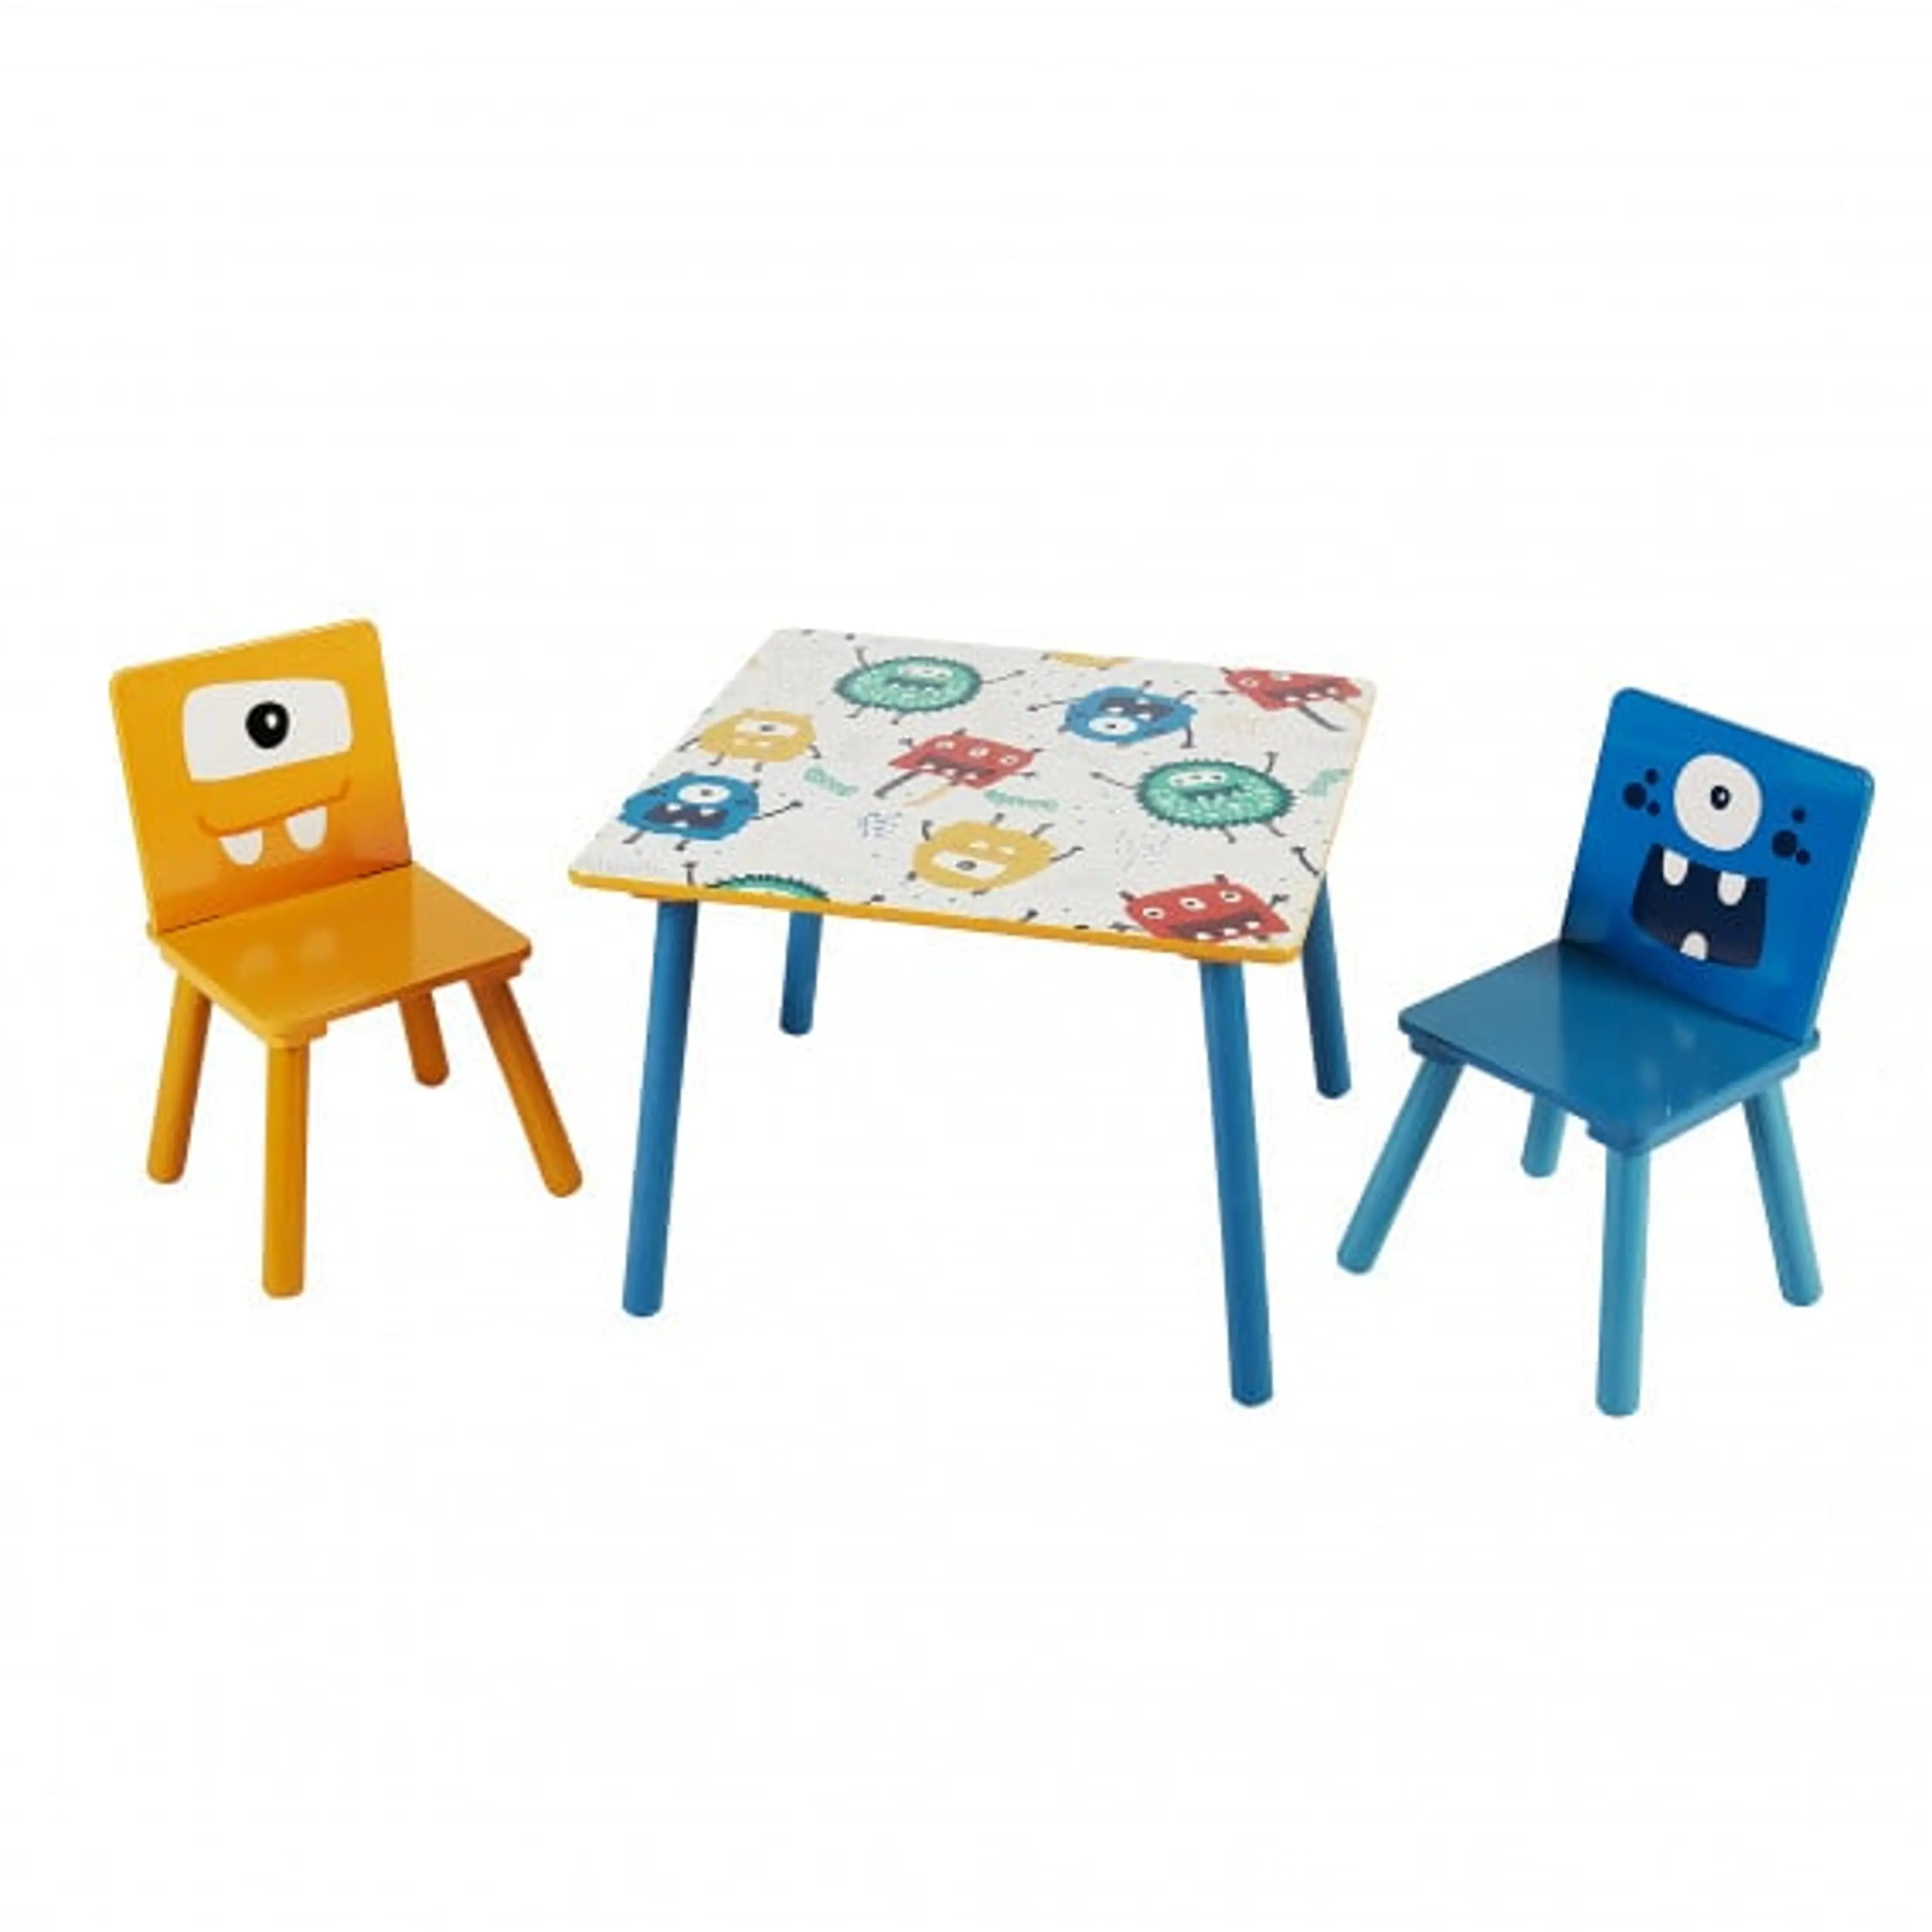 Дeтска дървeна маса с 2 столчeта- за игра, рисуванe, хранeнe